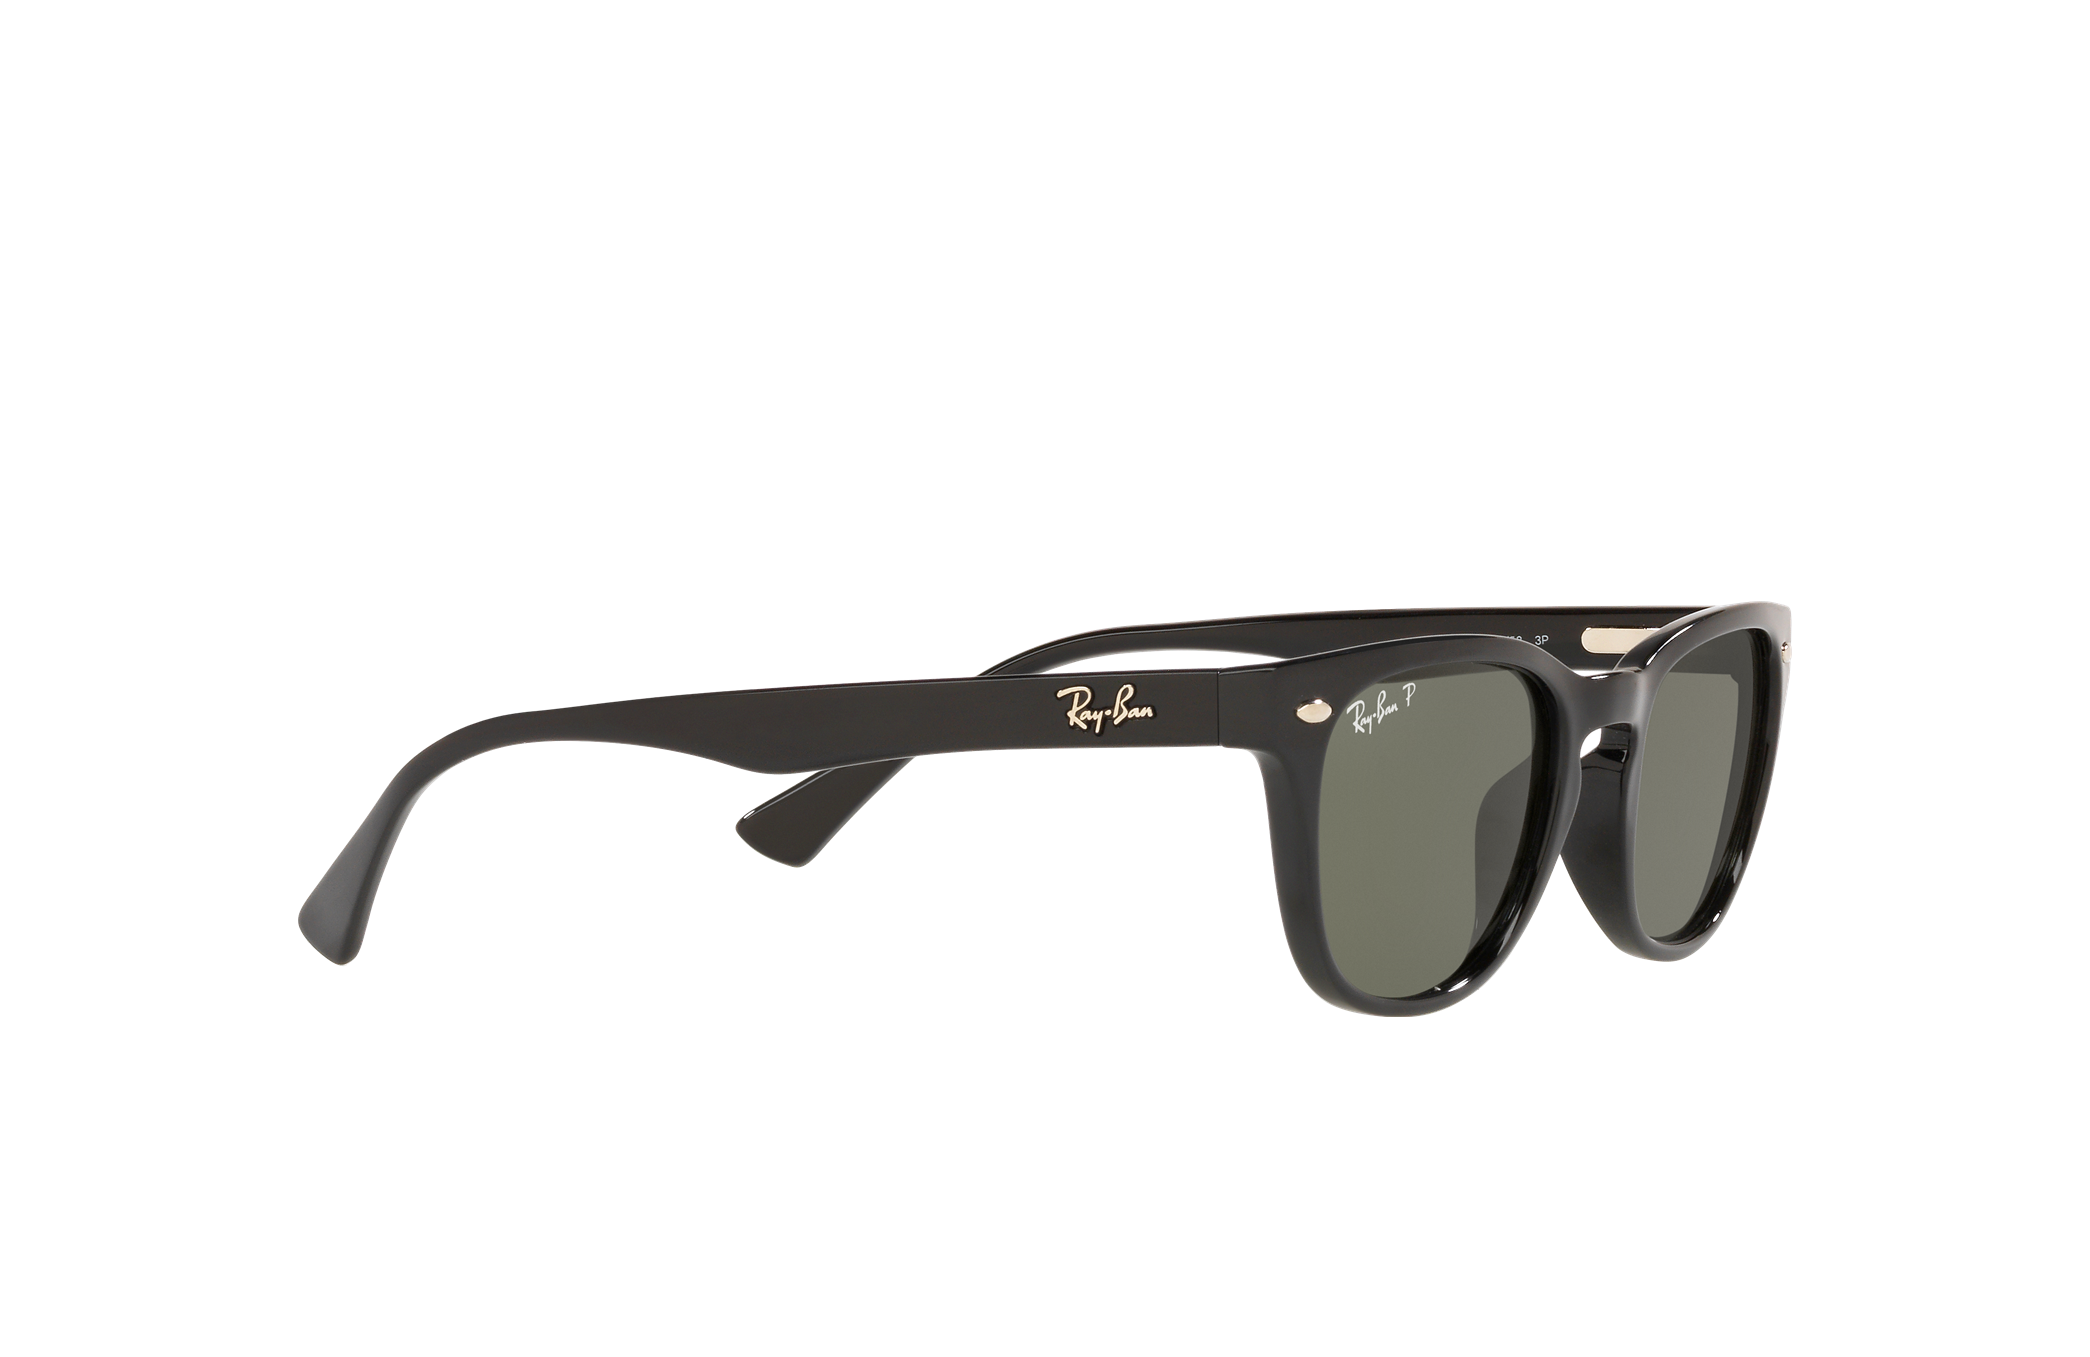 Breuninger Accessoires Sonnenbrillen Sonnenbrille rb4140 schwarz 